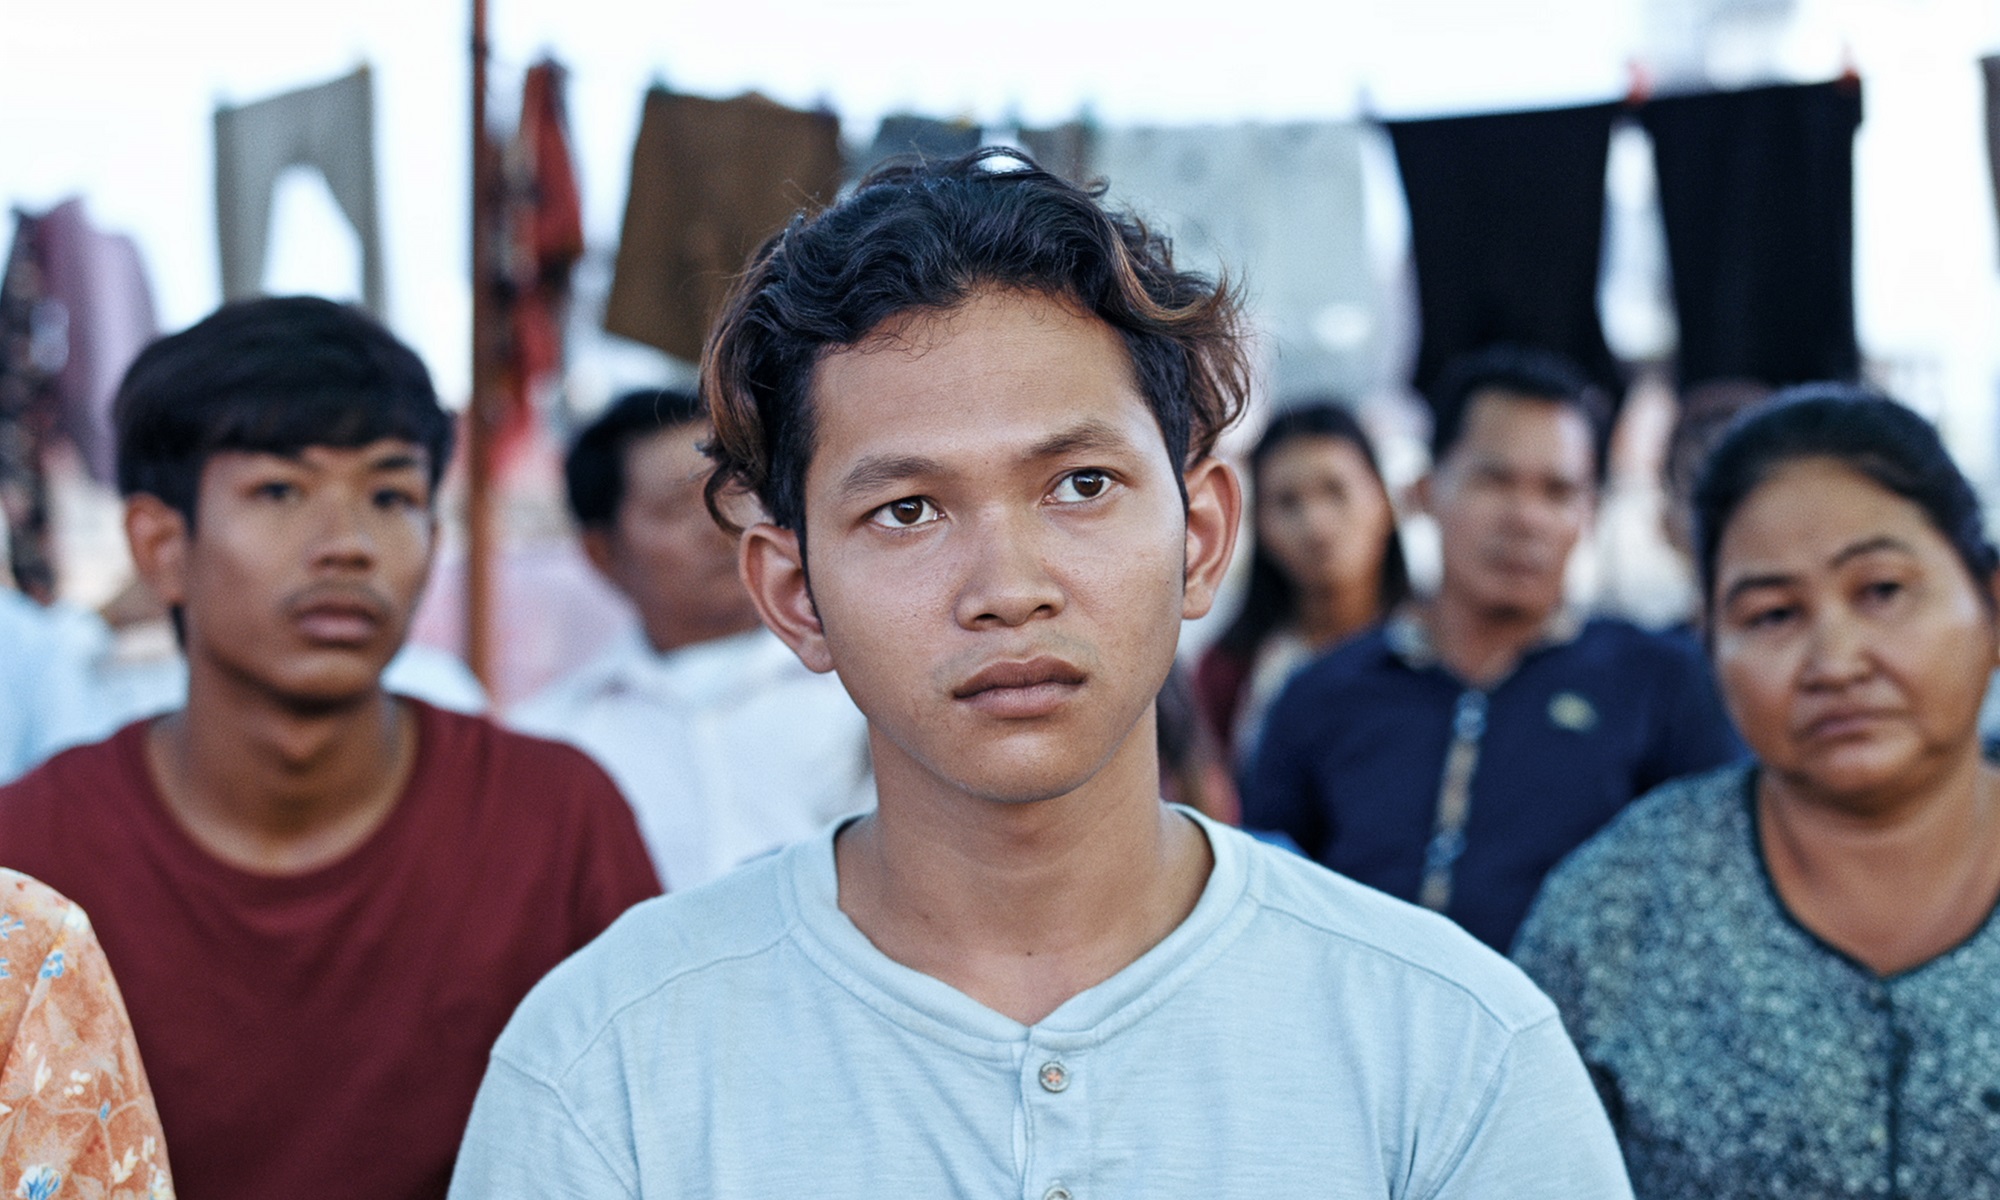 Irradiés Festival Résistances Rithy Panh cinéma militant documentaire génocide Foix Ariège 2021 25e édition séance spéciale Cambodge Hiroshima Seconde Guerre Mondiale